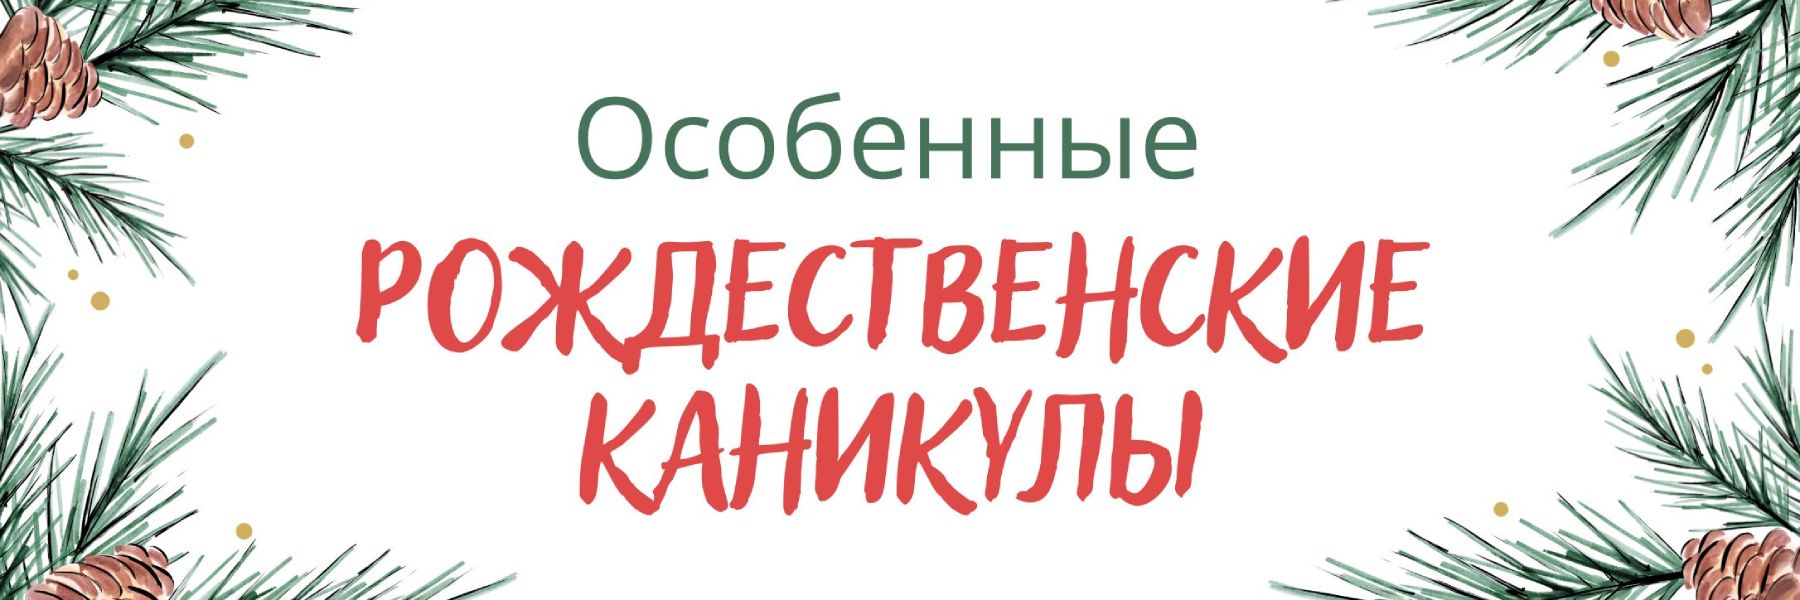 Especial-Fiestas-Navideñas-RUS